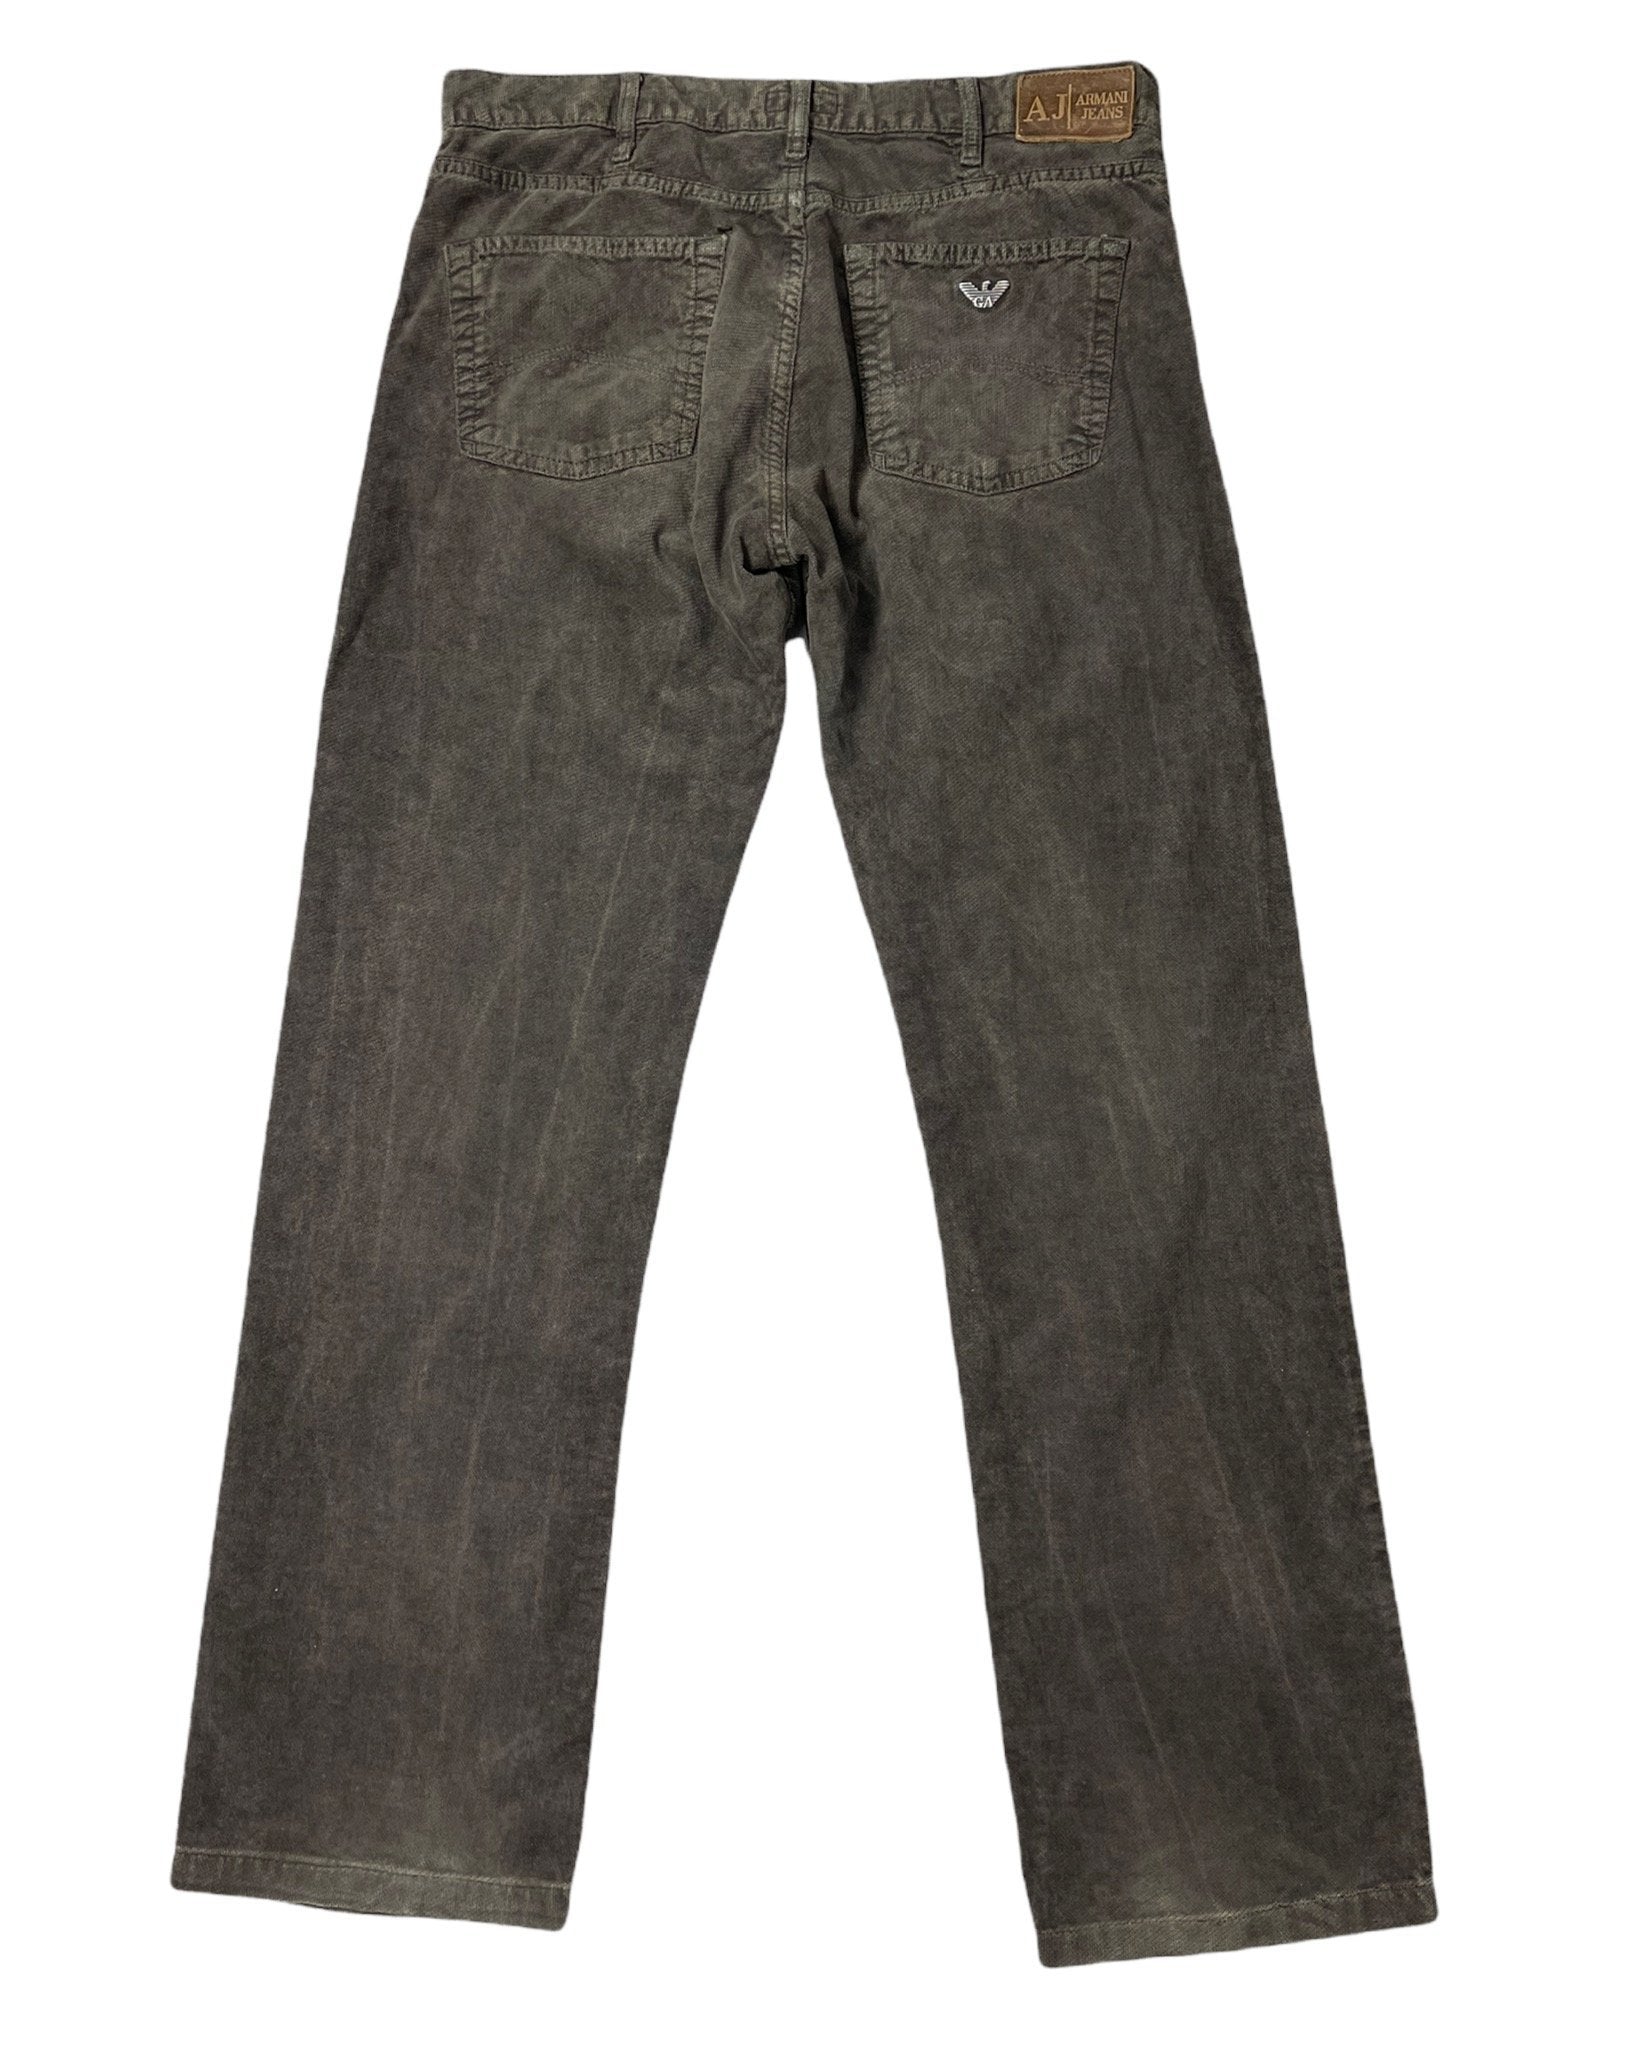  Jeans Giorgio Armani Jeans - W33 - PLOMOSTORE